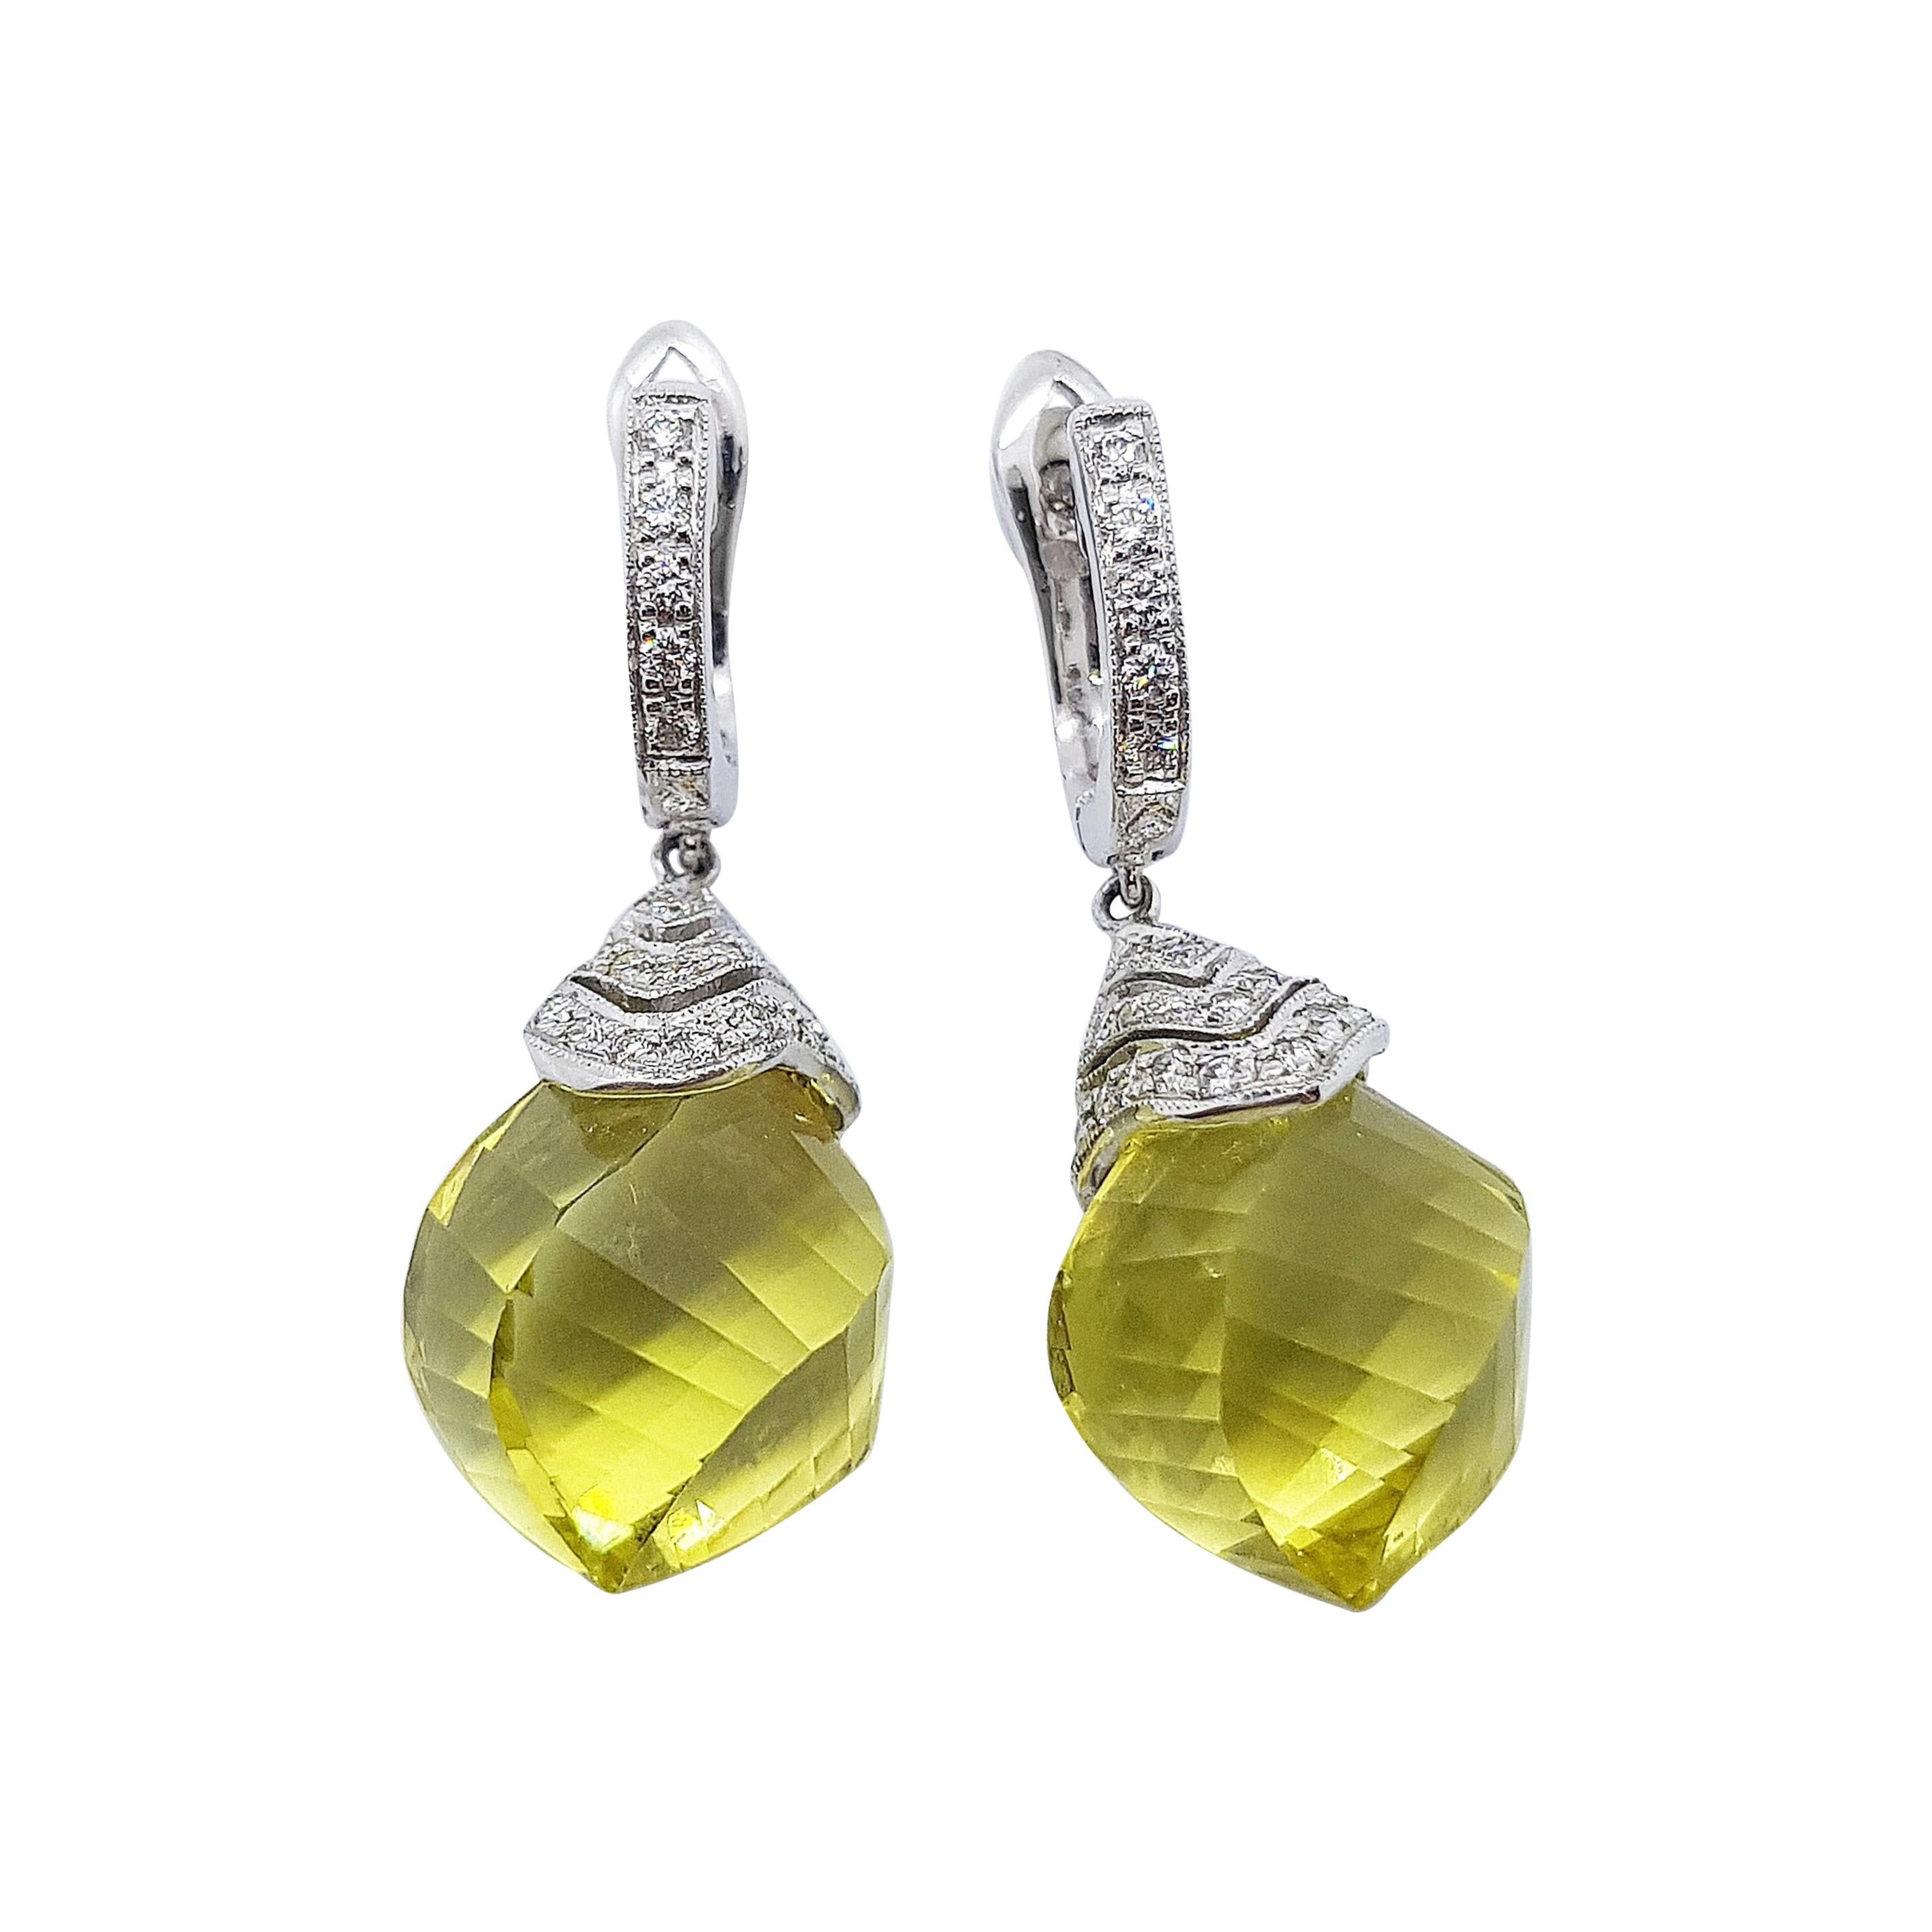 Zitronenquarz mit Diamant-Ohrringen in 18 Karat Weißgold Fassung